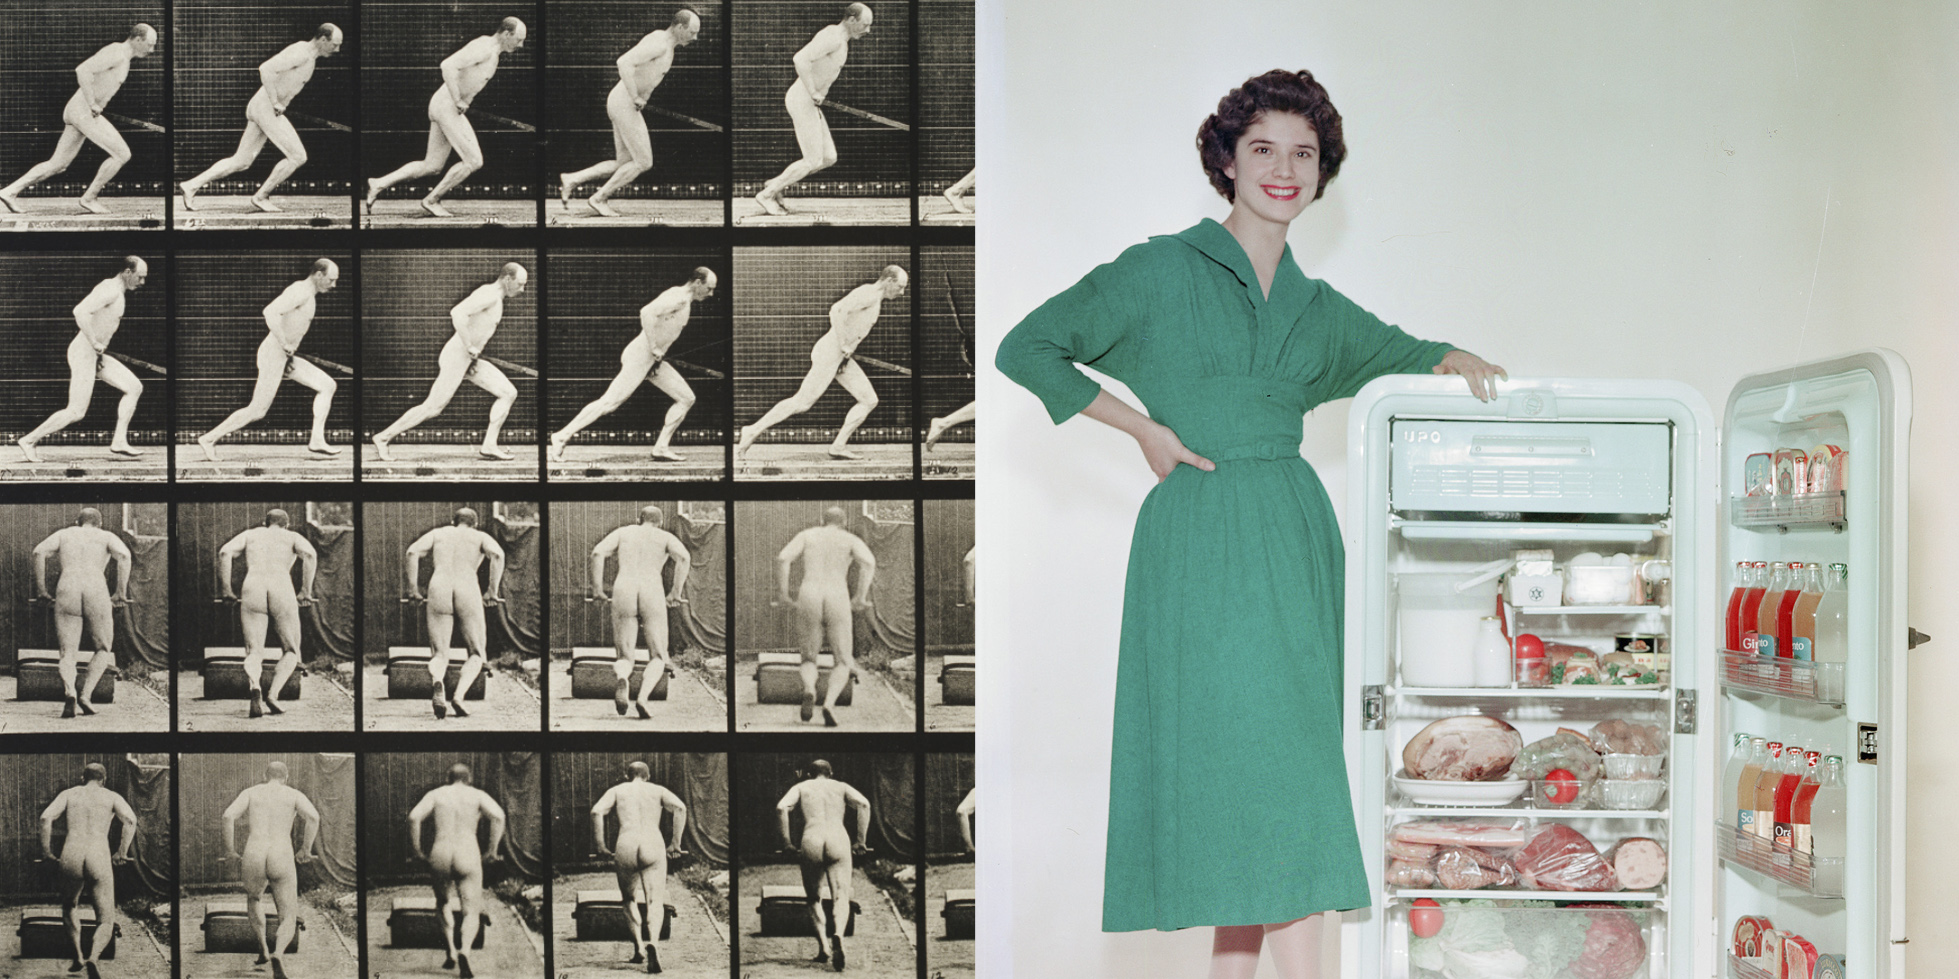 Kuvasarja miehestä liikkeessä ja vanha mainoskuva, jossa nainen seisoo hymyillen avoimen jääkaapin vieressä.